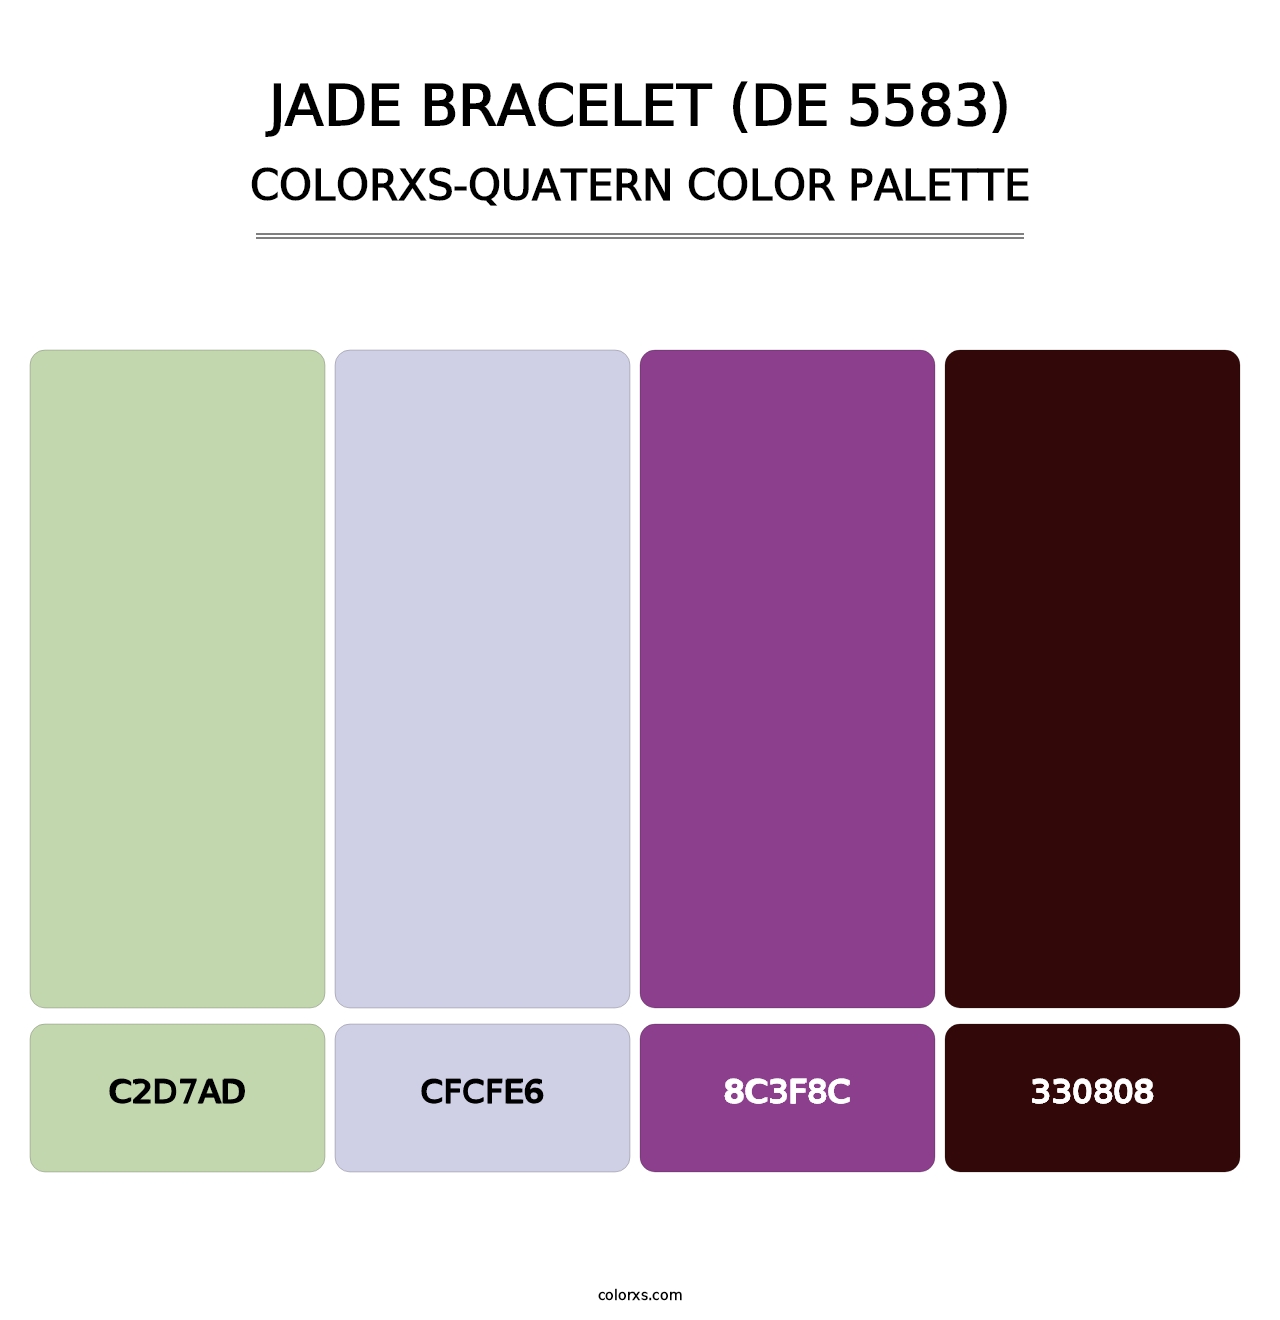 Jade Bracelet (DE 5583) - Colorxs Quatern Palette